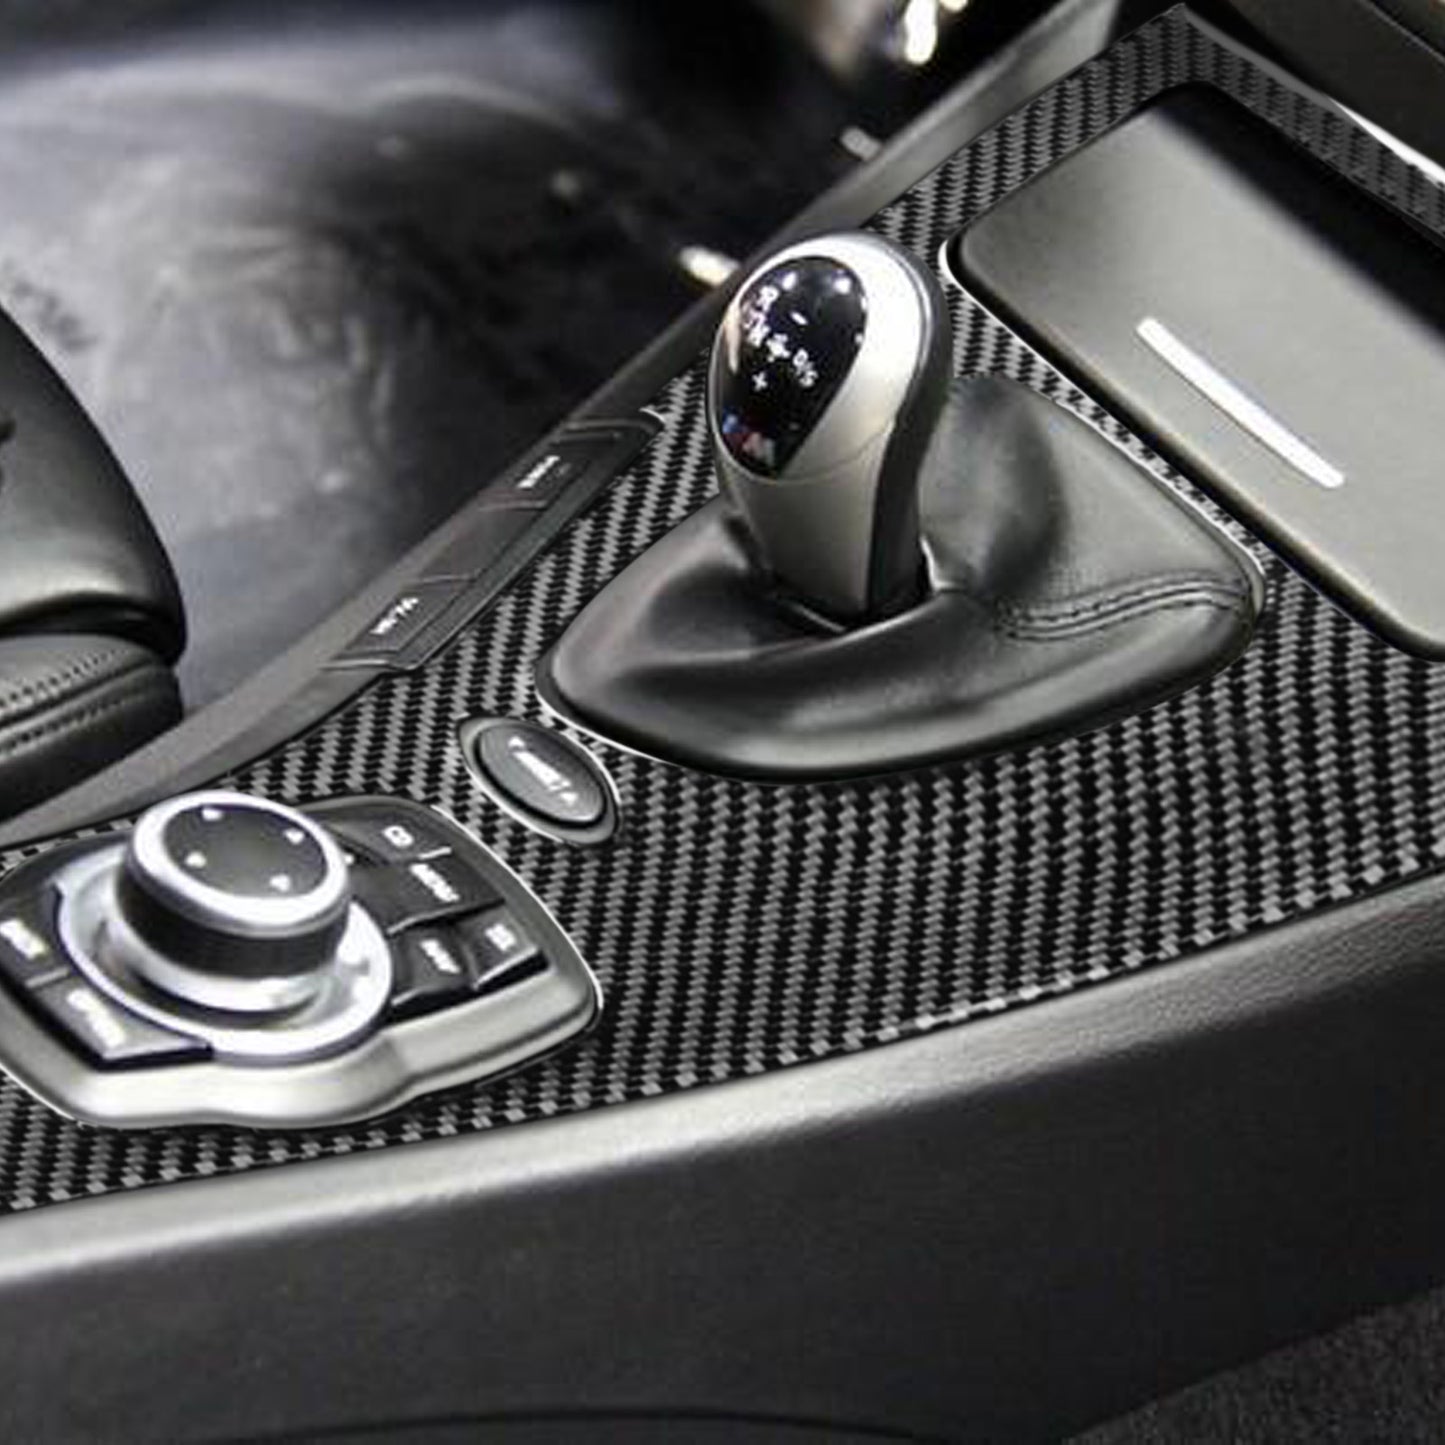 Pinalloy Carbon Fiber Shift Knob Control Panel for BMW E90/E92/E93 3 Series Car Interior Modification Accessory for BMW